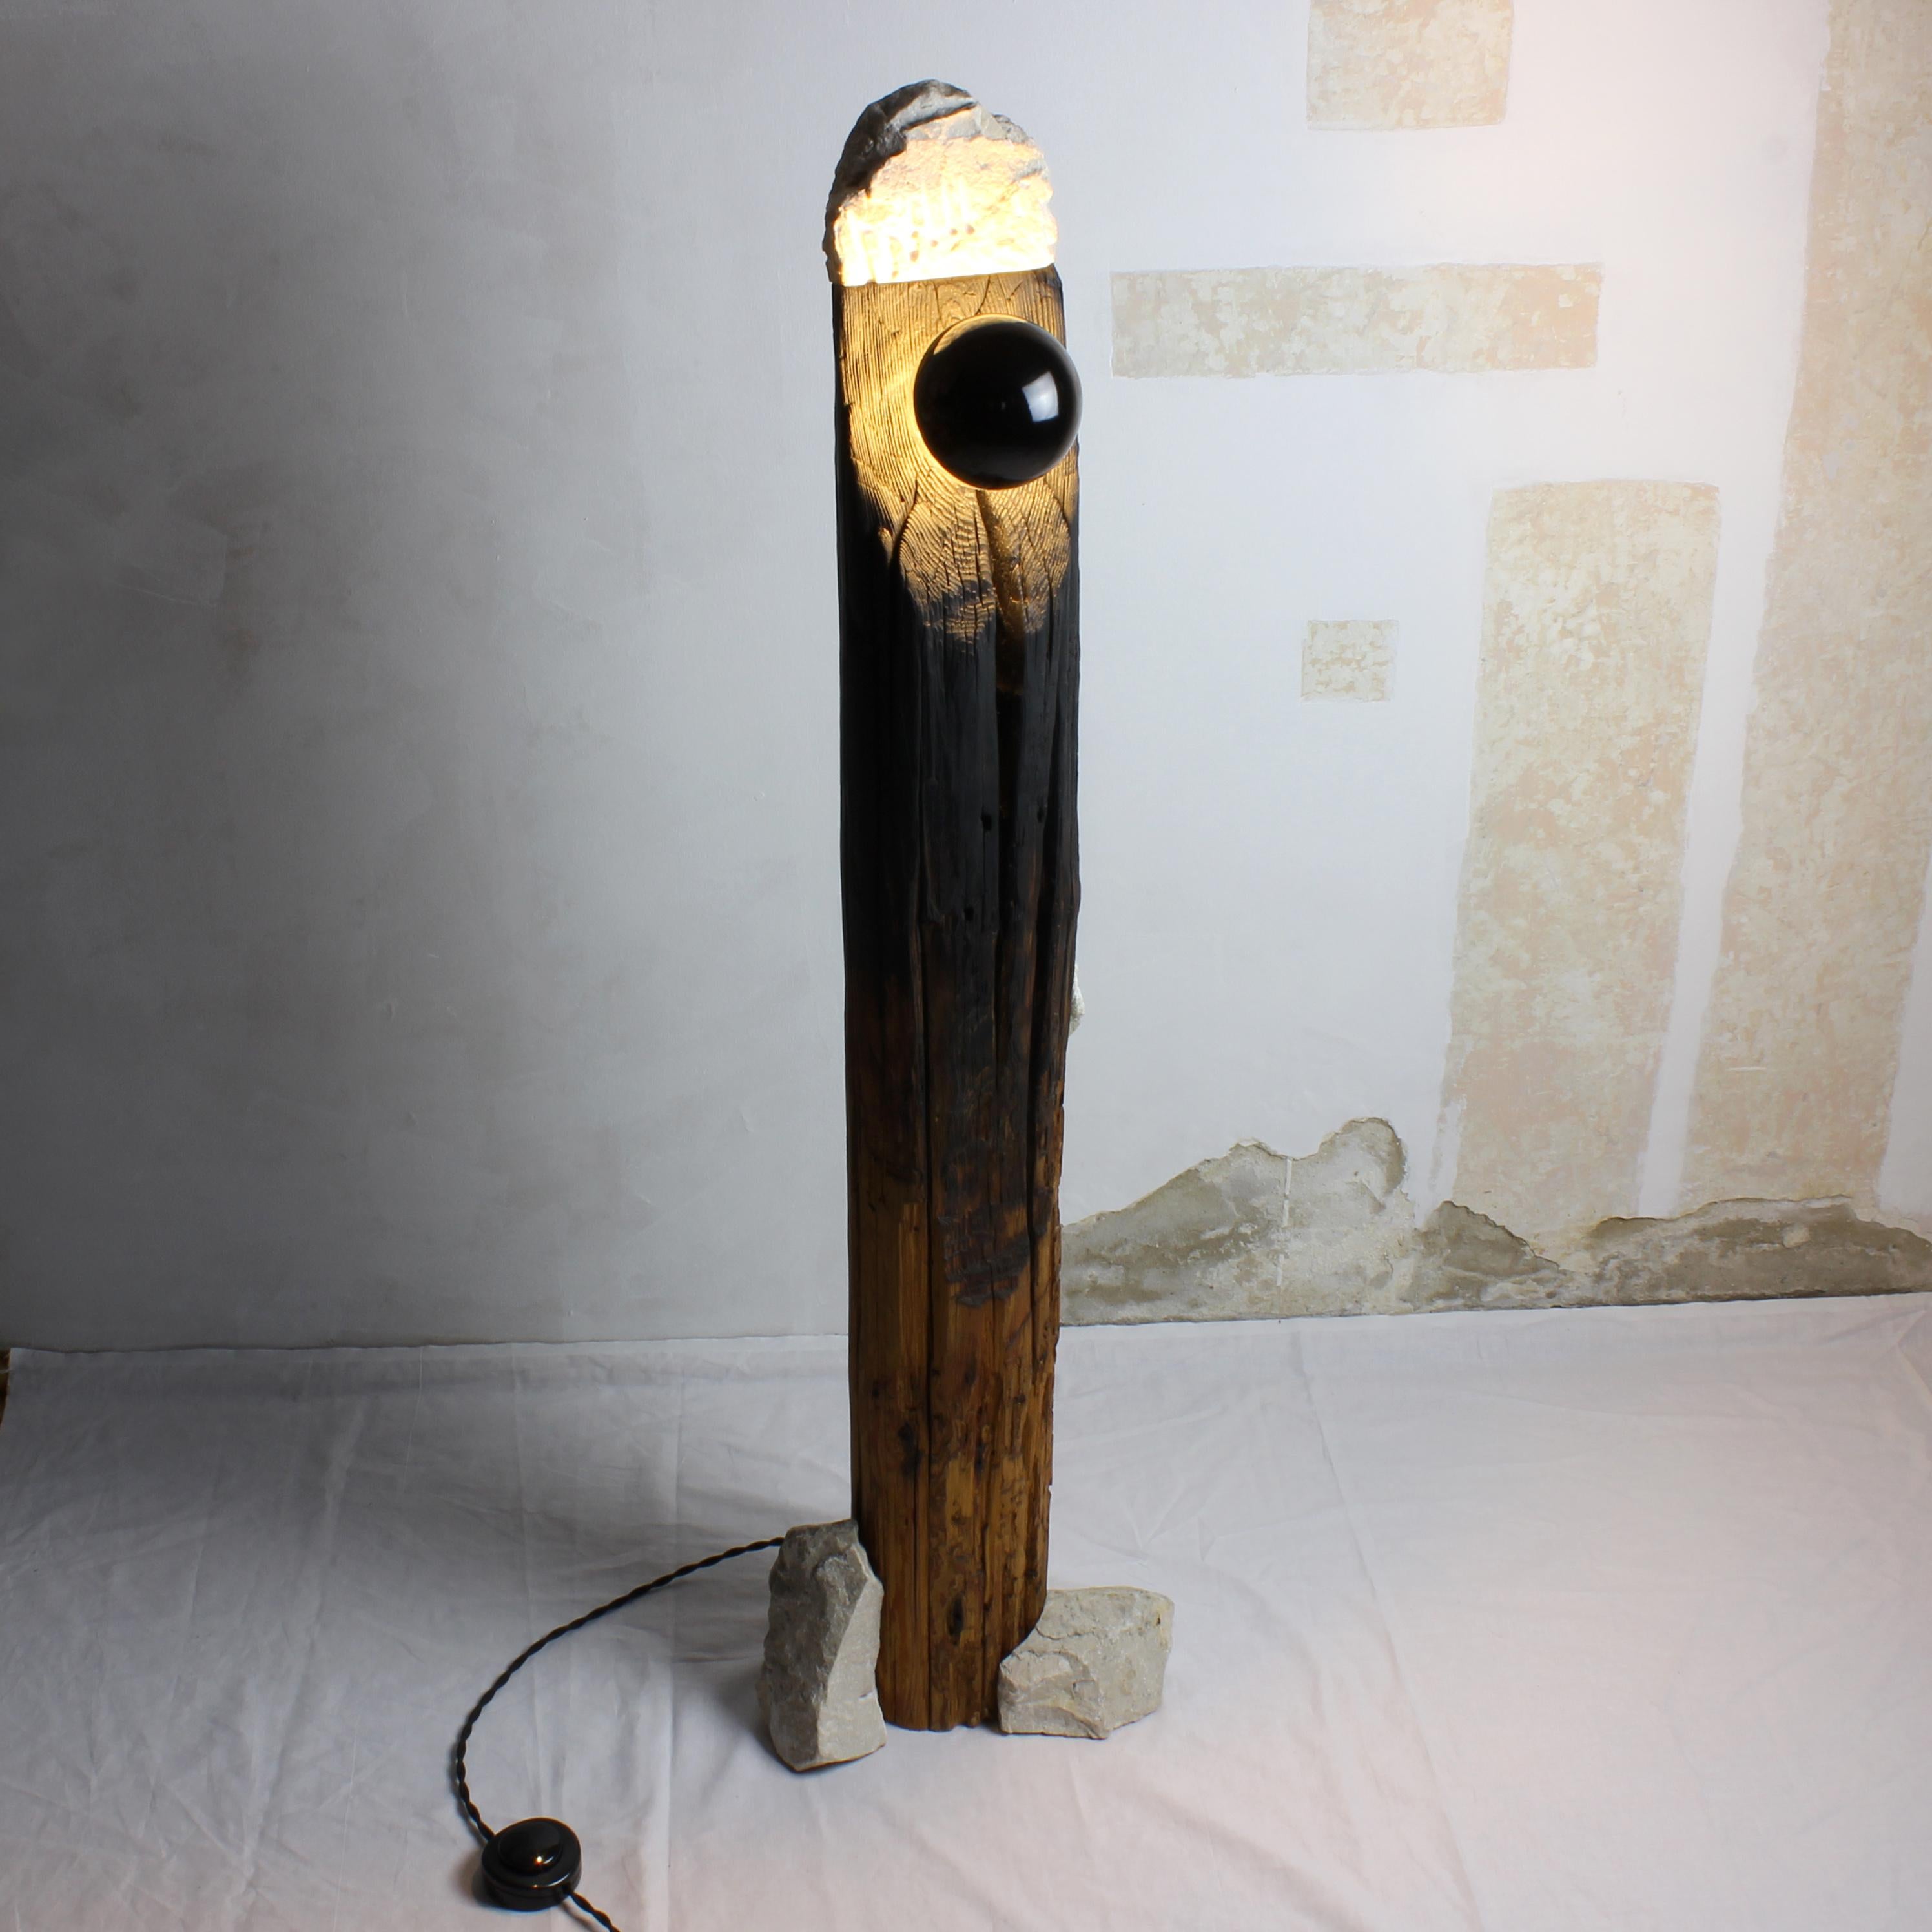 Diese einzigartige Stehlampe ist aus wiederverwendeten Holzsäulen und weißen Steinresten gefertigt und stellt eine stimmungsvolle Kunstskulptur dar. Die Verkabelung ist neu. Aus diesen MATERIALEN neue Objekte zu kreieren, ist die eigentliche